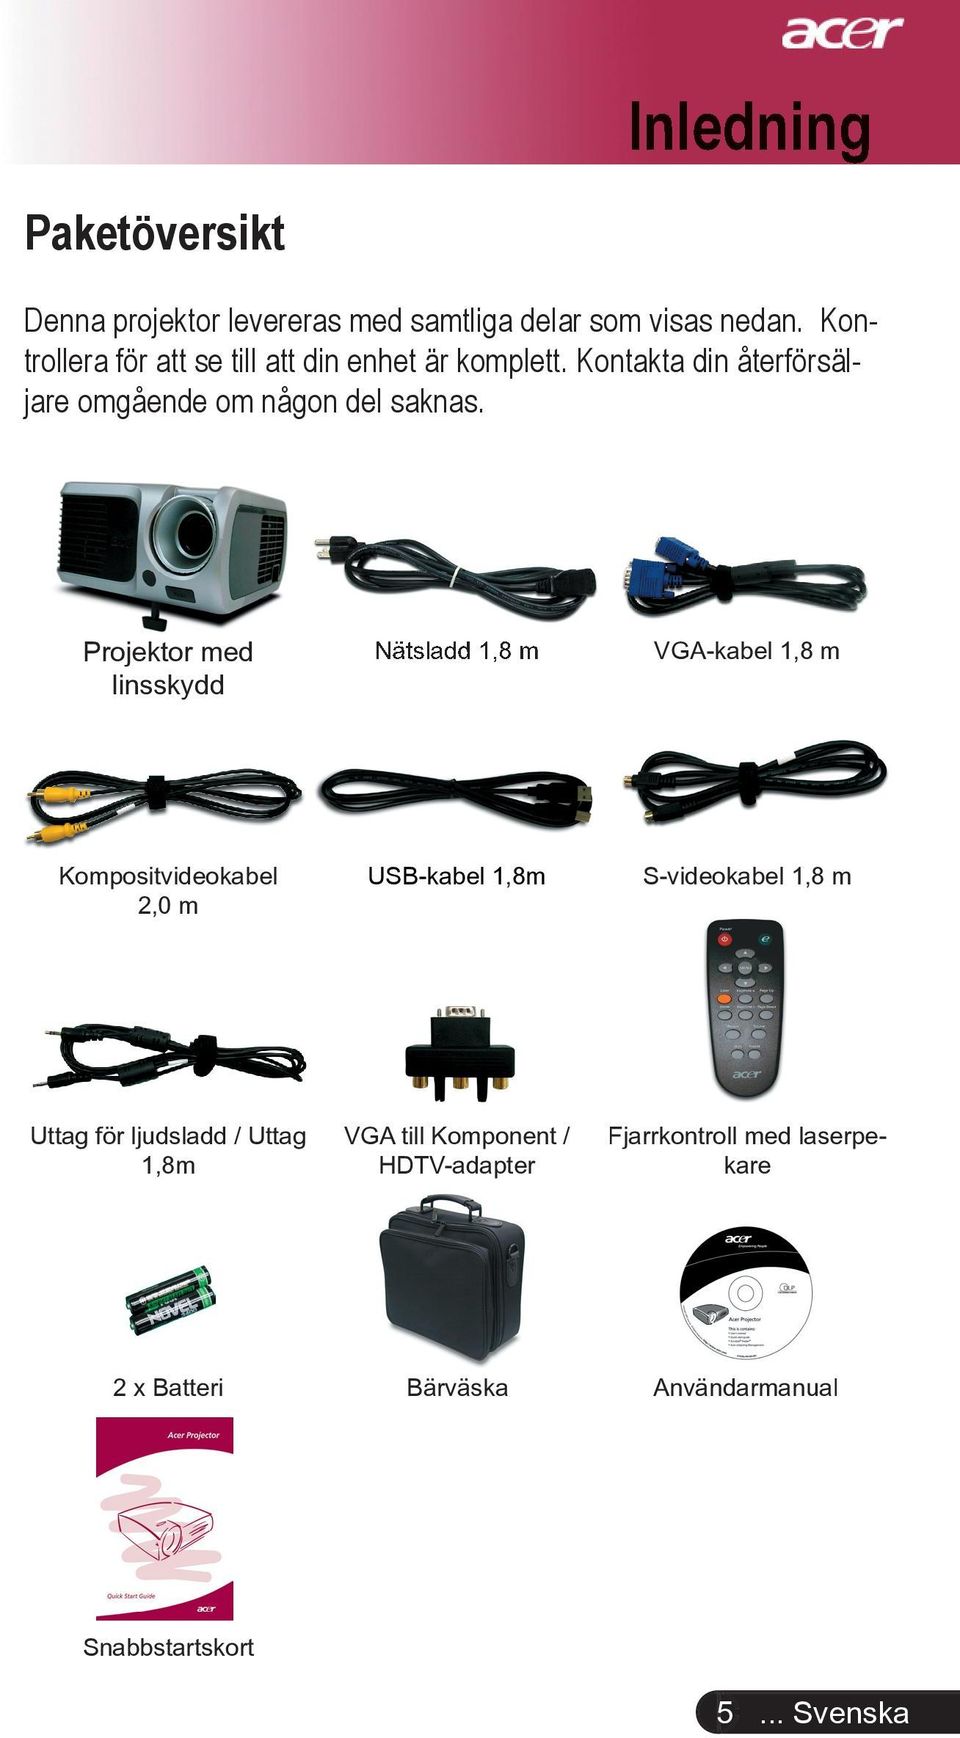 Projektor med linsskydd Nätsladd 1,8 m VGA-kabel 1,8 m Kompositvideokabel 2,0 m USB-kabel 1,8m S-videokabel 1,8 m